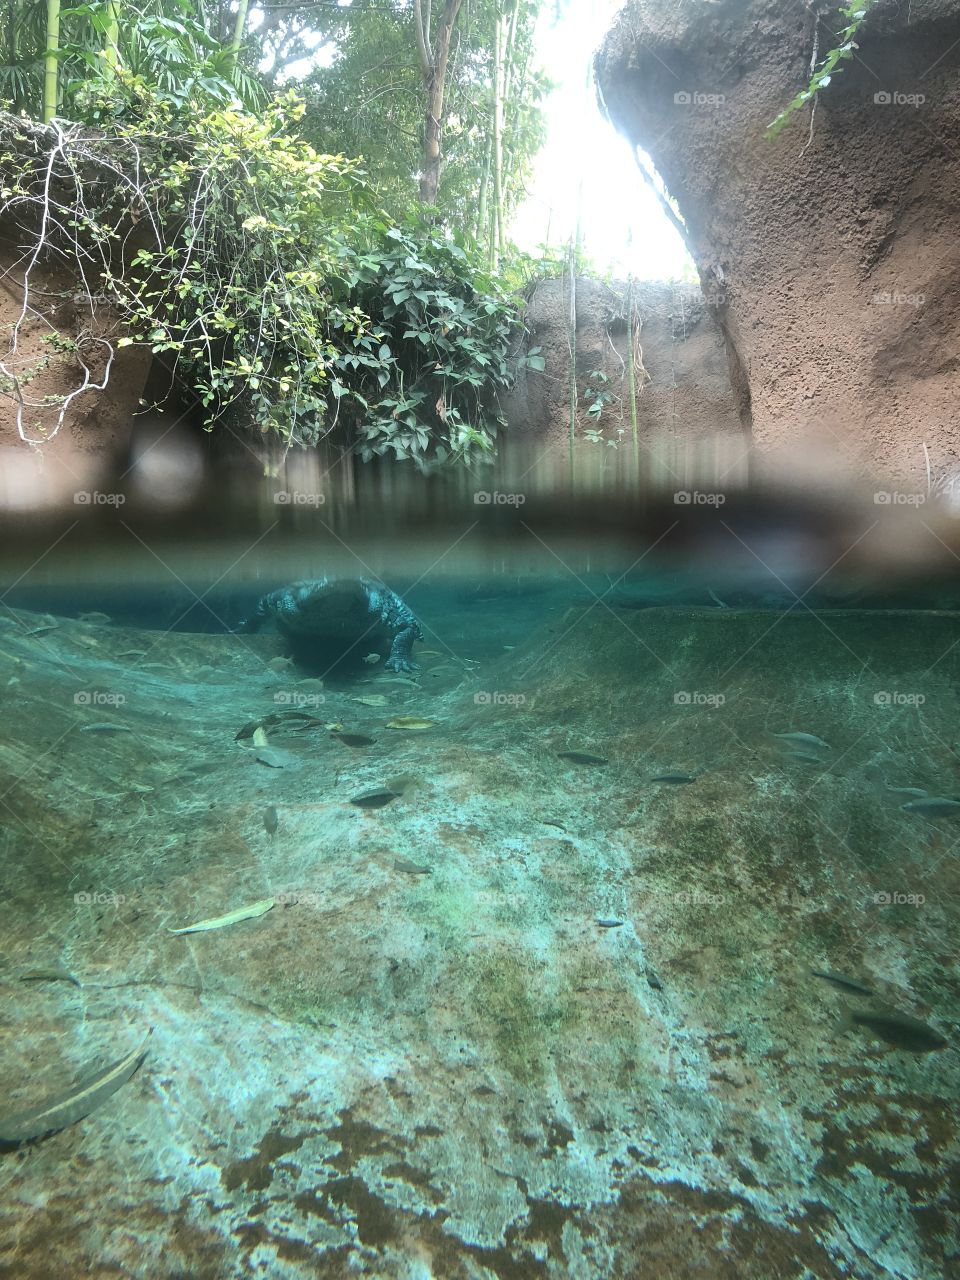 Gator underwater 